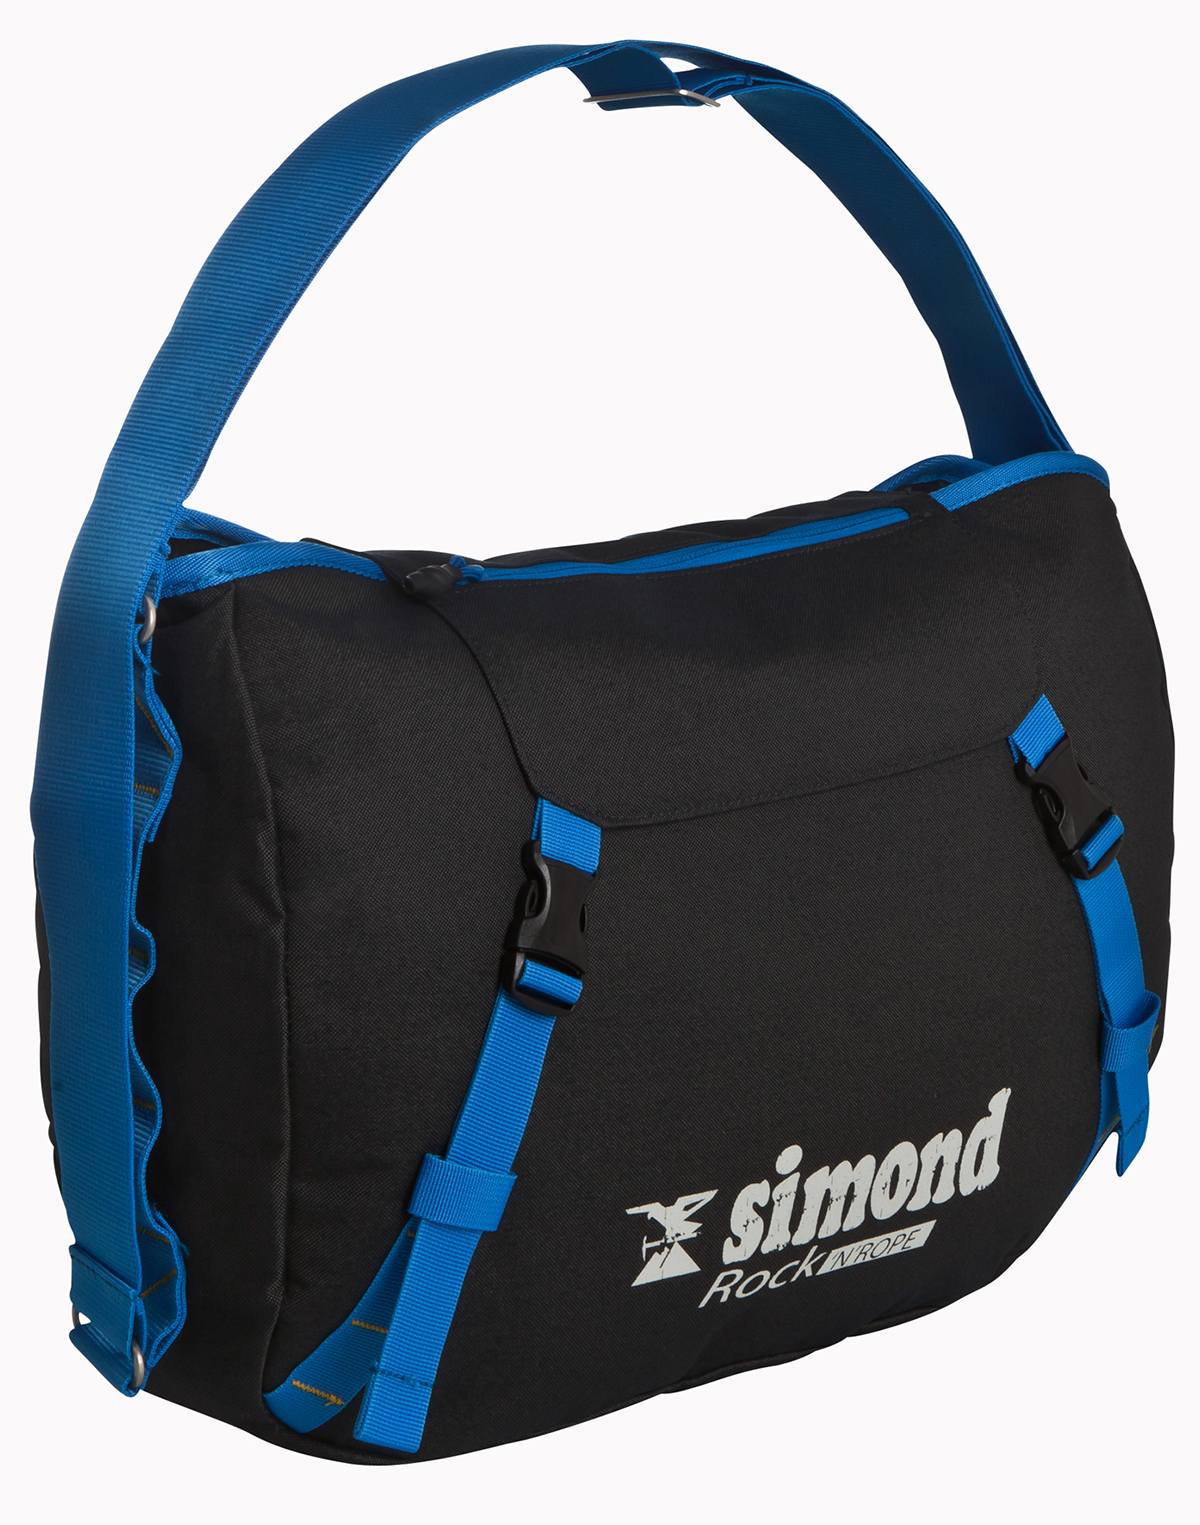 simond rock'n rope bag climbing rope bag Gear backpack messenger Shoulder strap